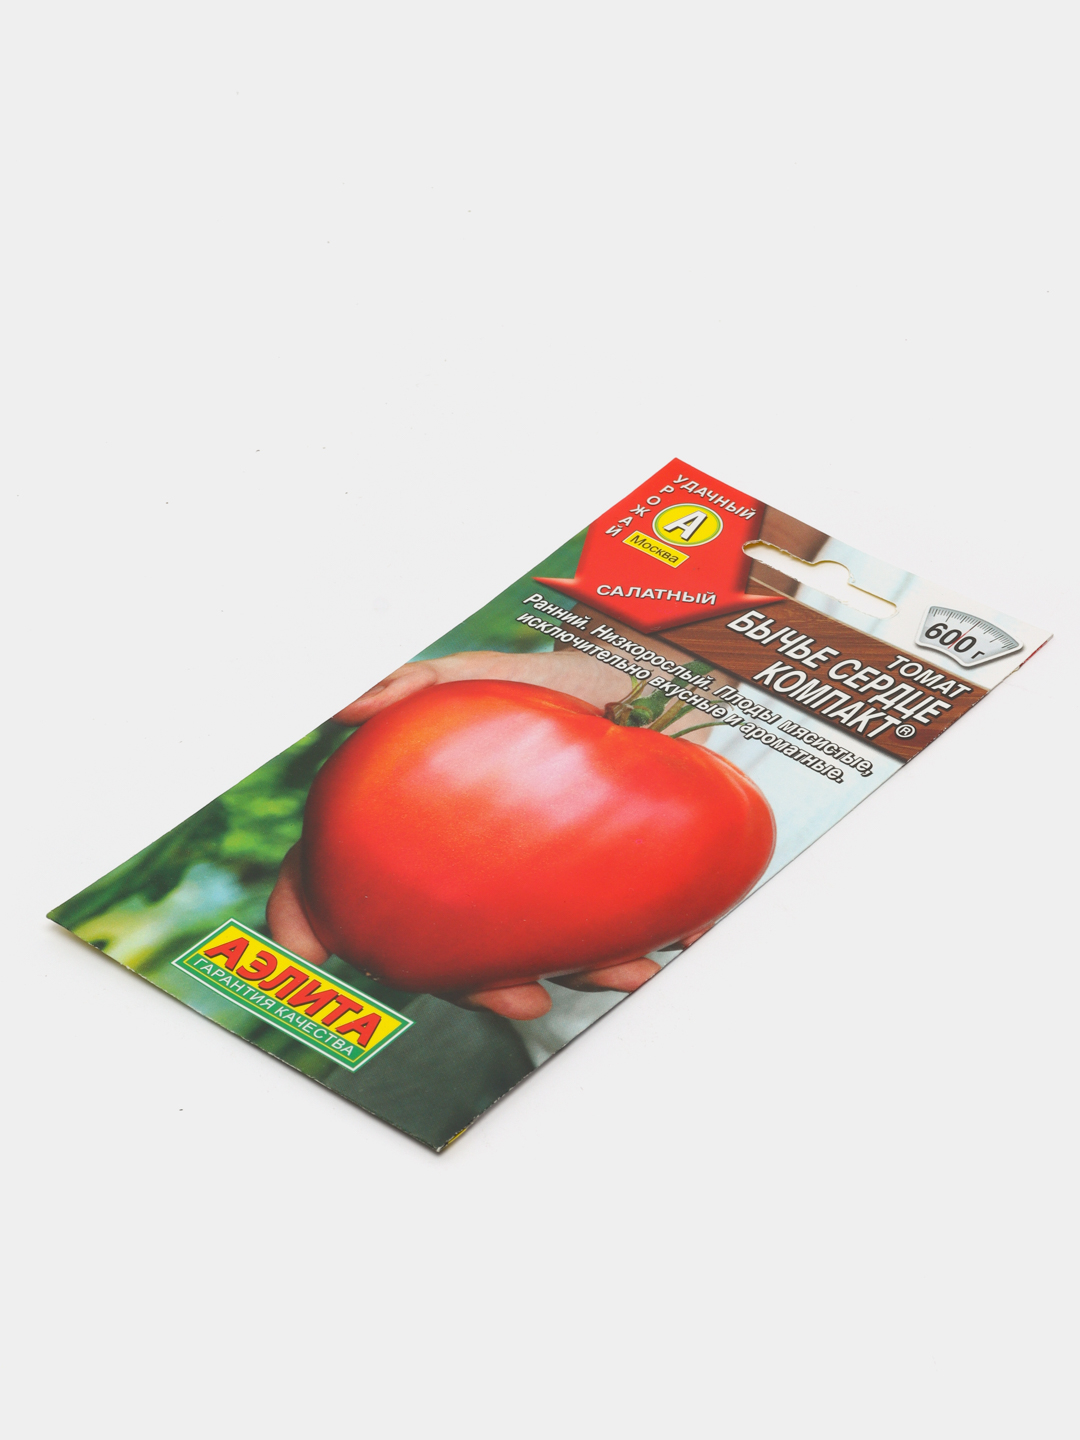 Бычье сердце томат компакт отзывы фото урожайность